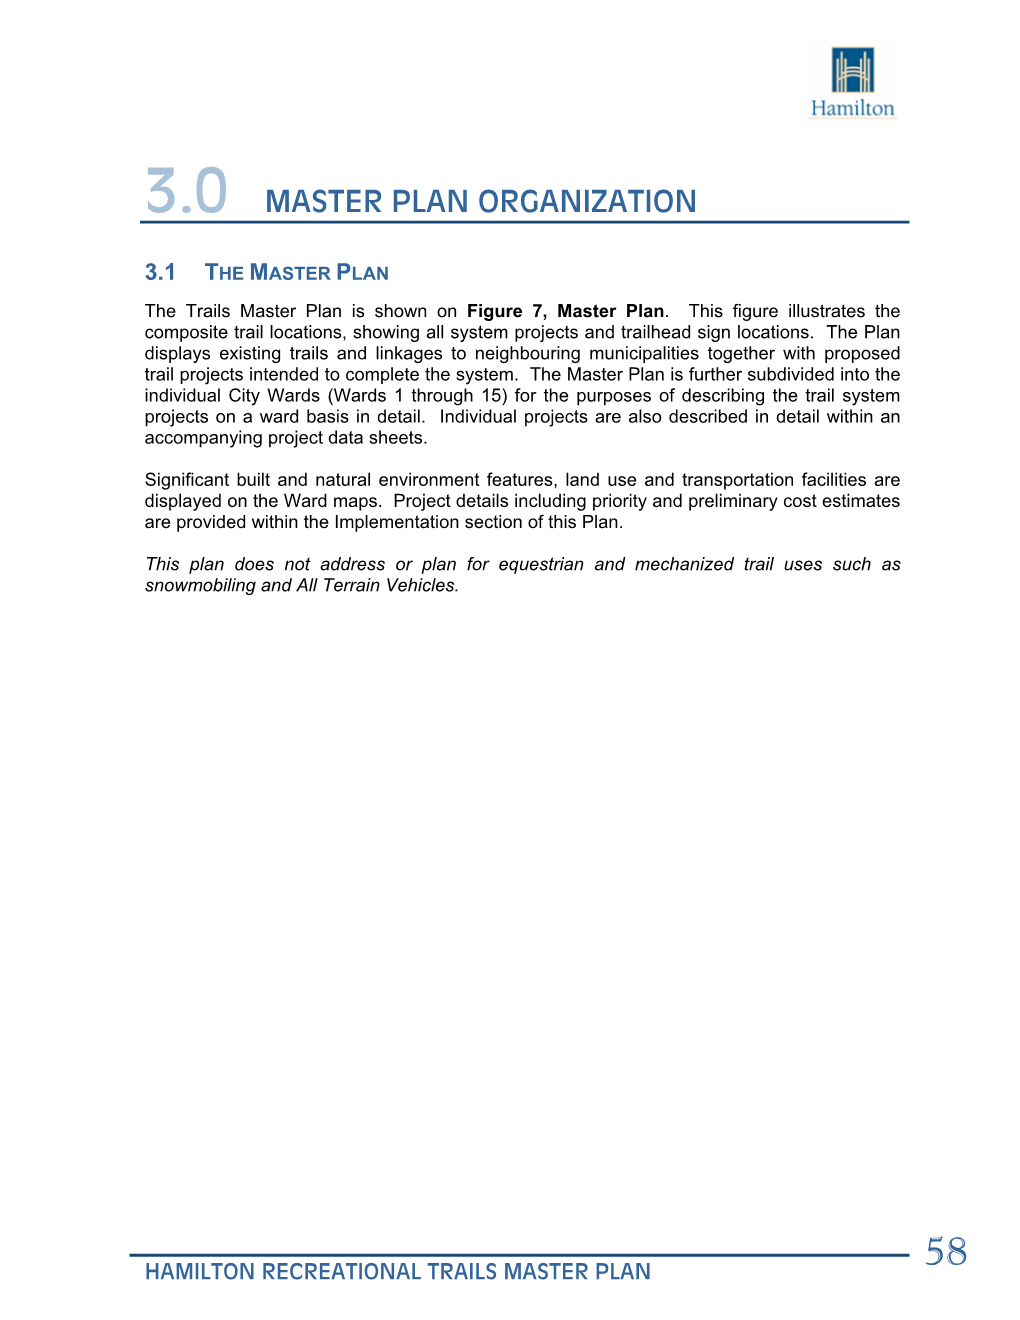 3.0 Master Plan Organization